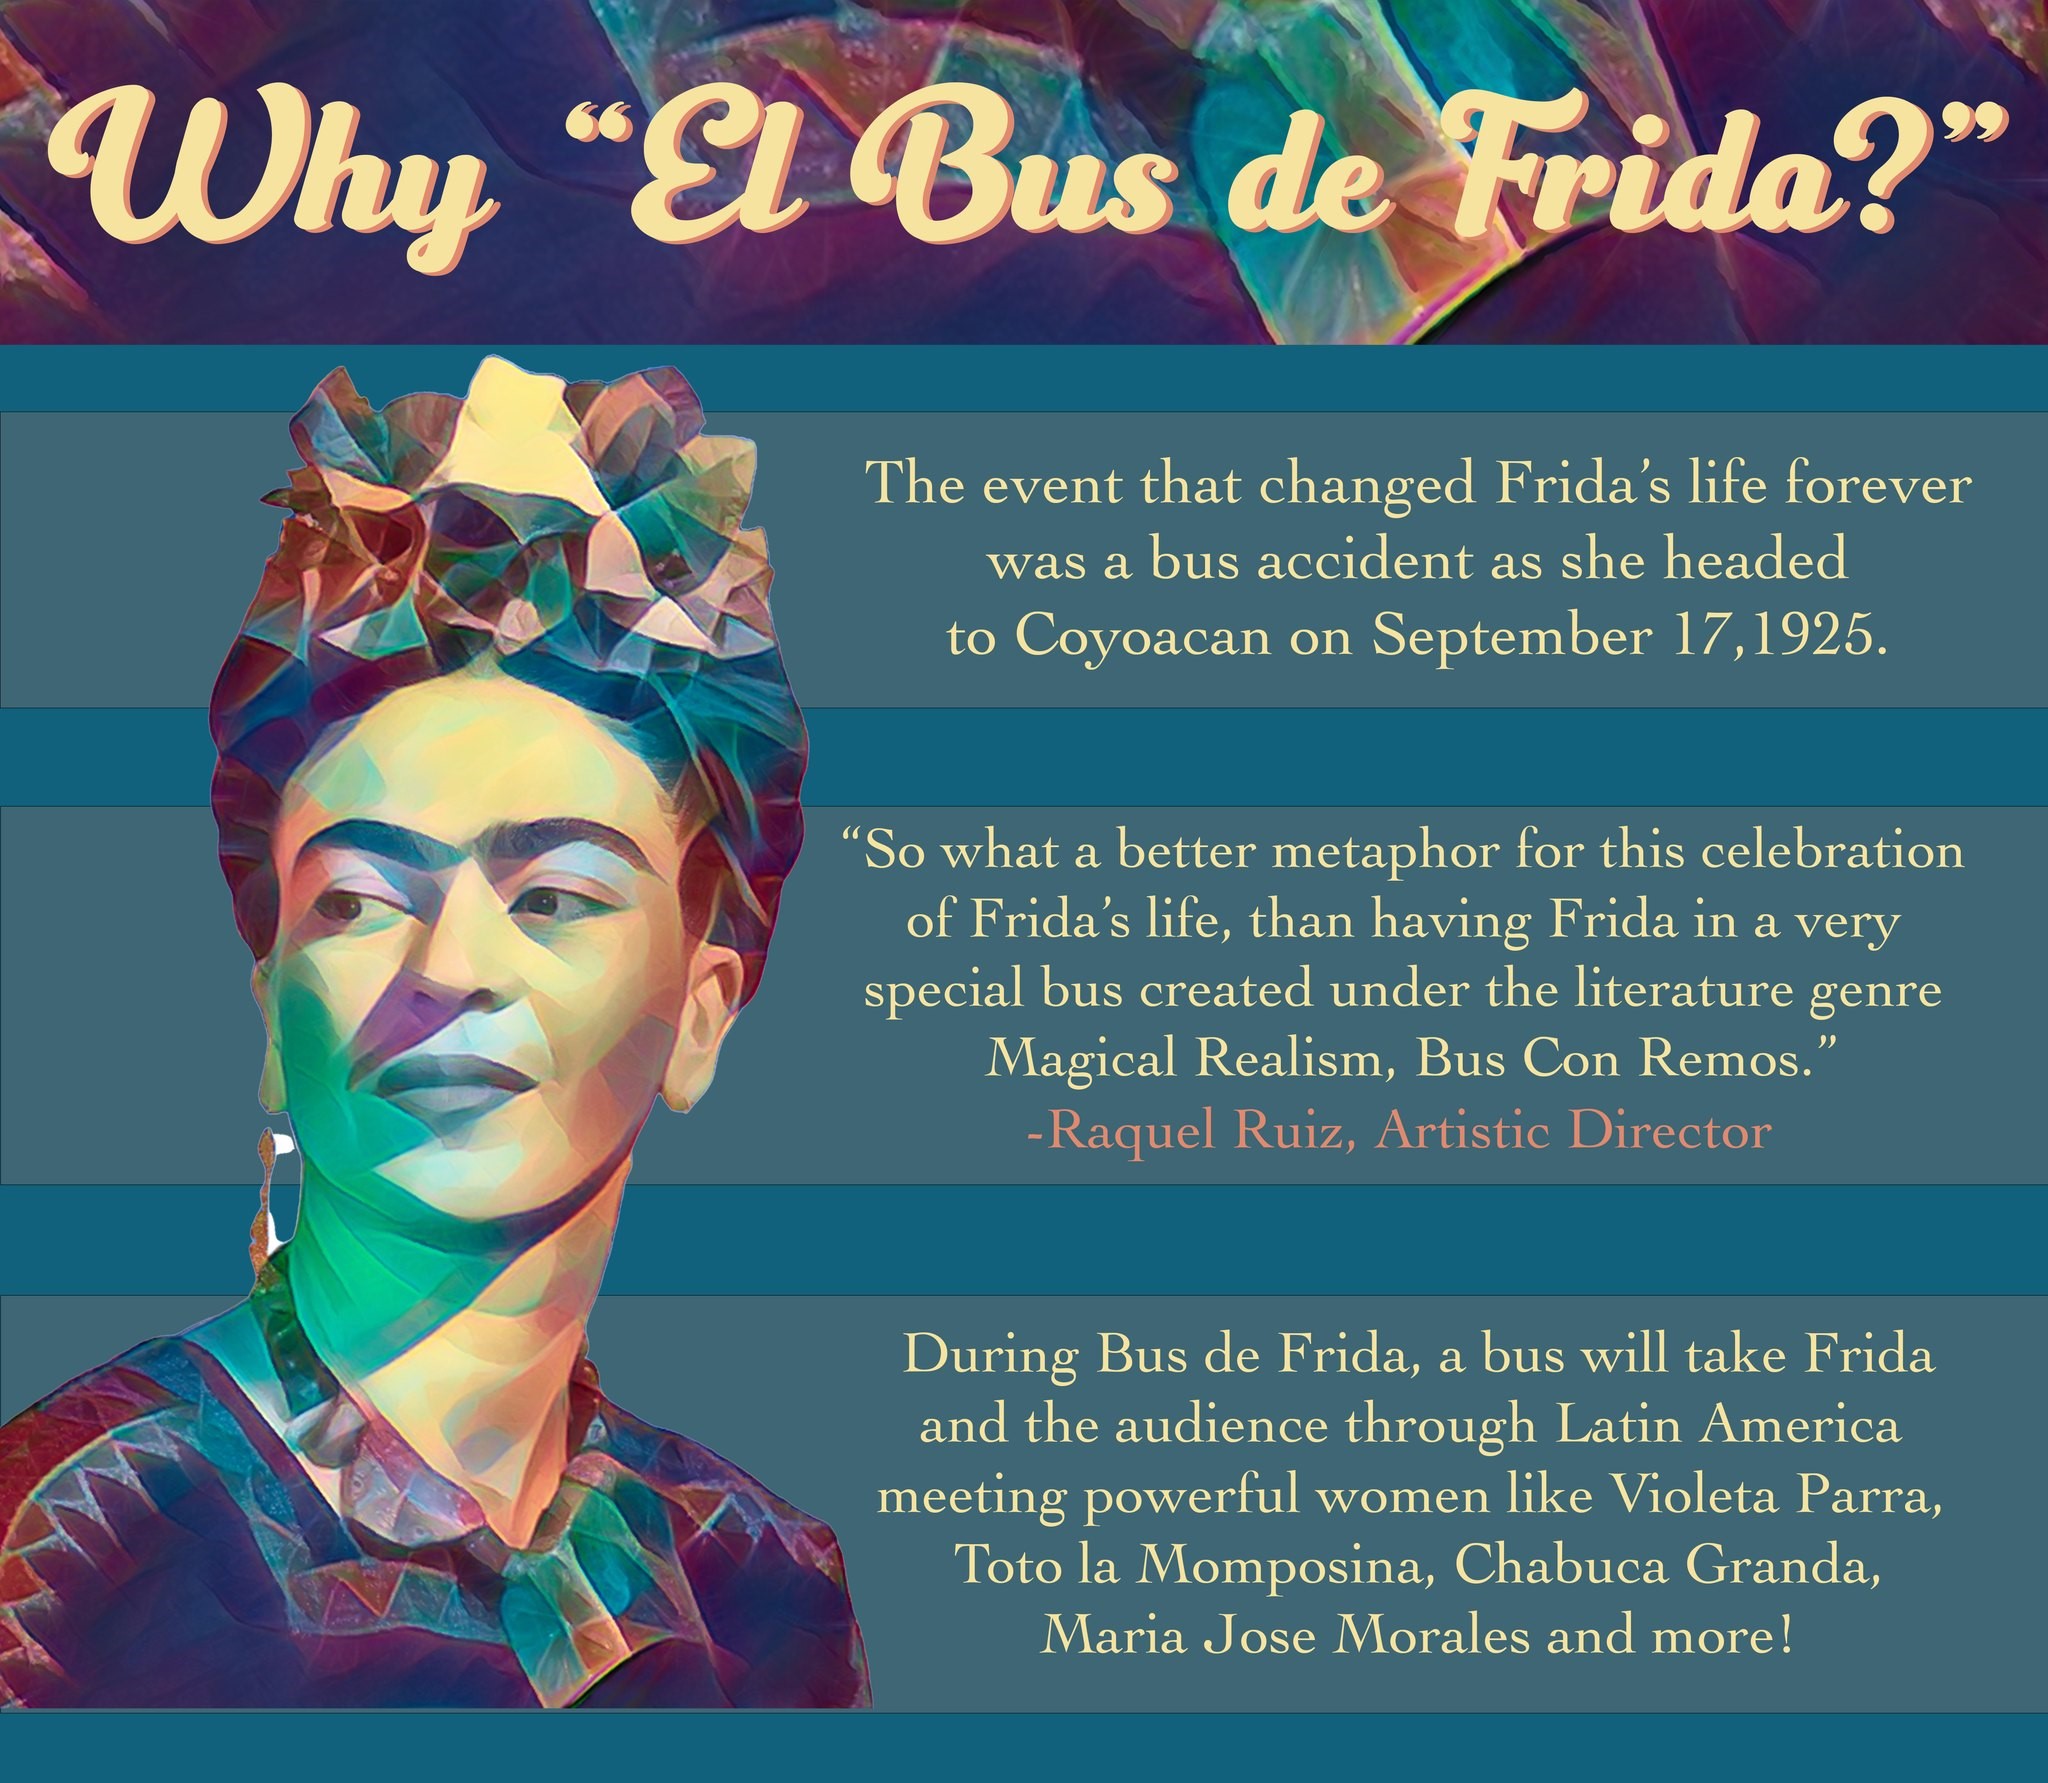 Frida Kahlo headshot